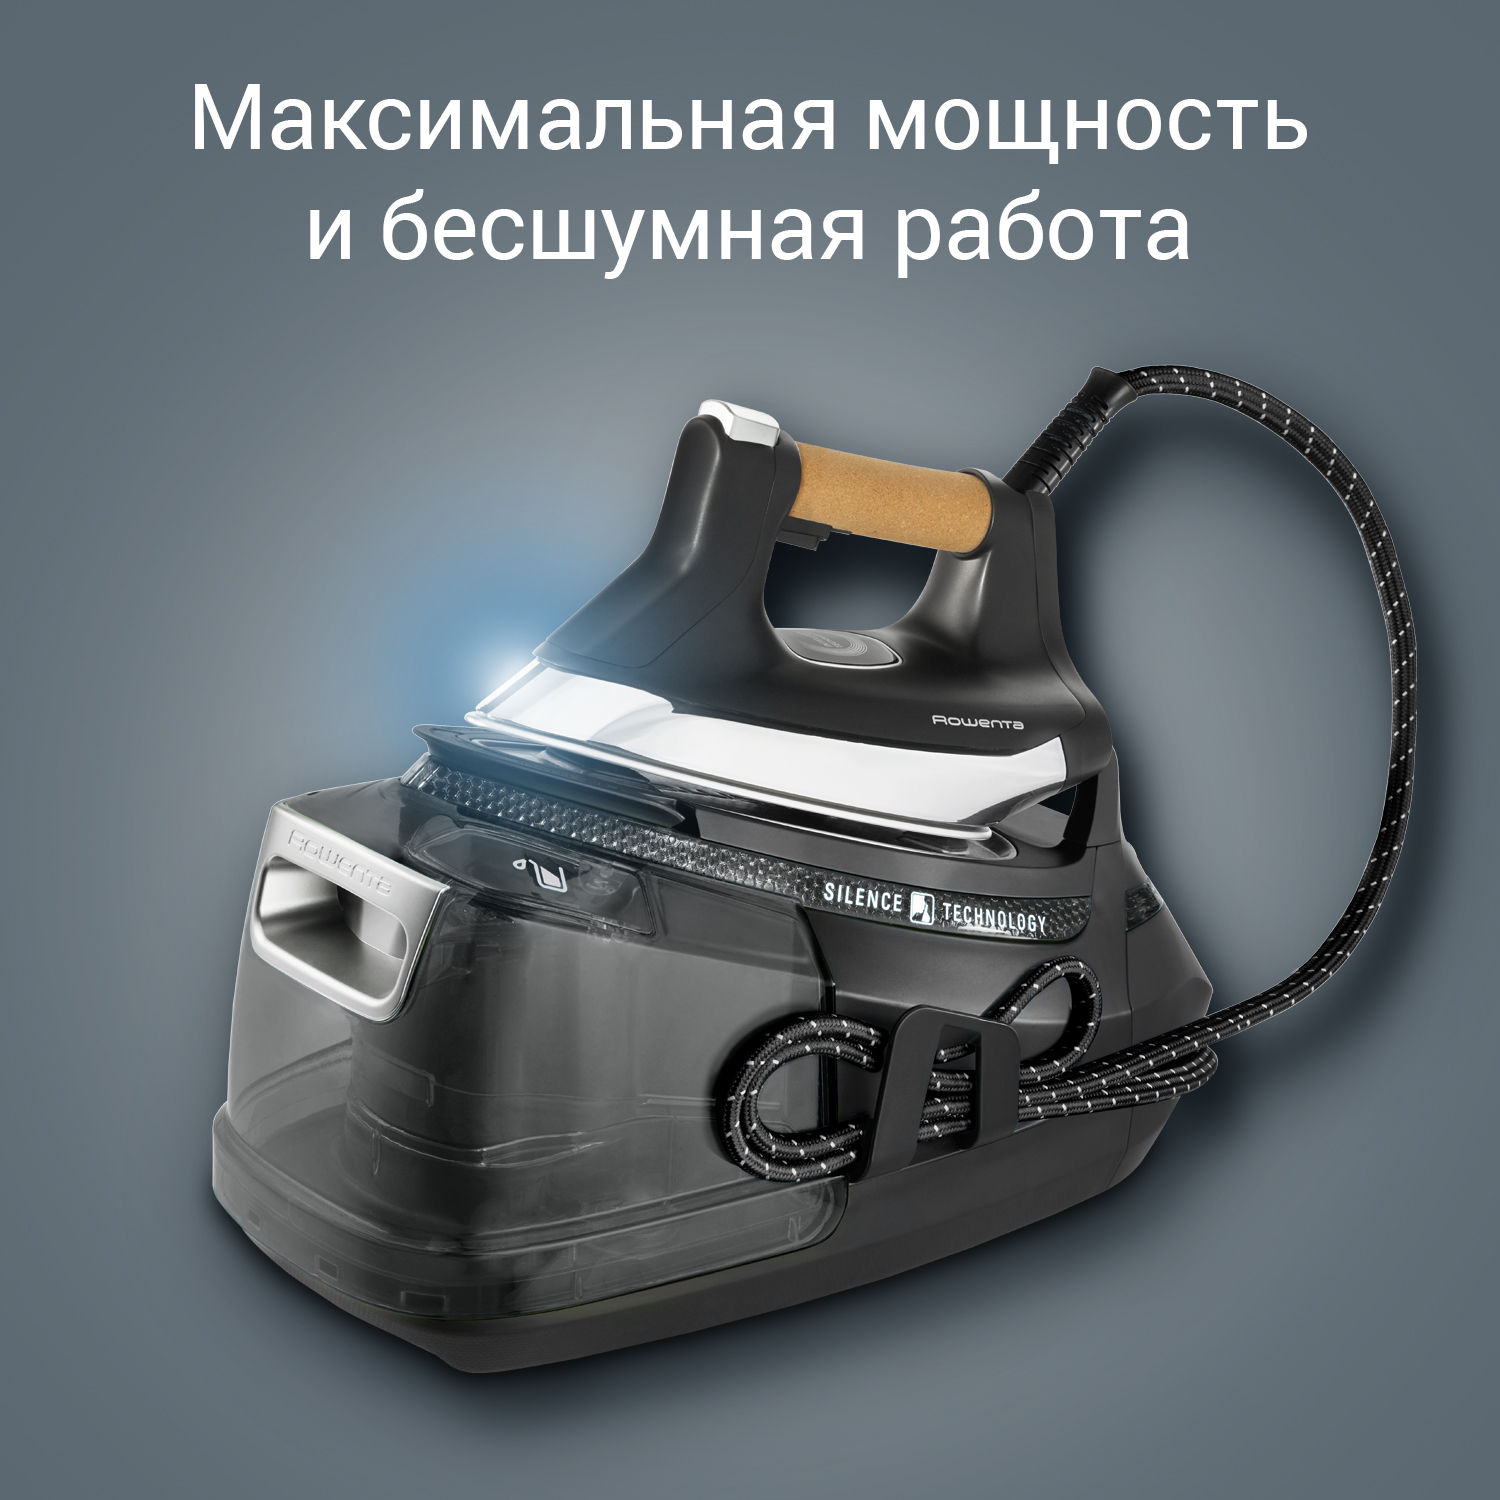 Парогенератор Rowenta DG9268 Silence Steam Pro купить в Москве на